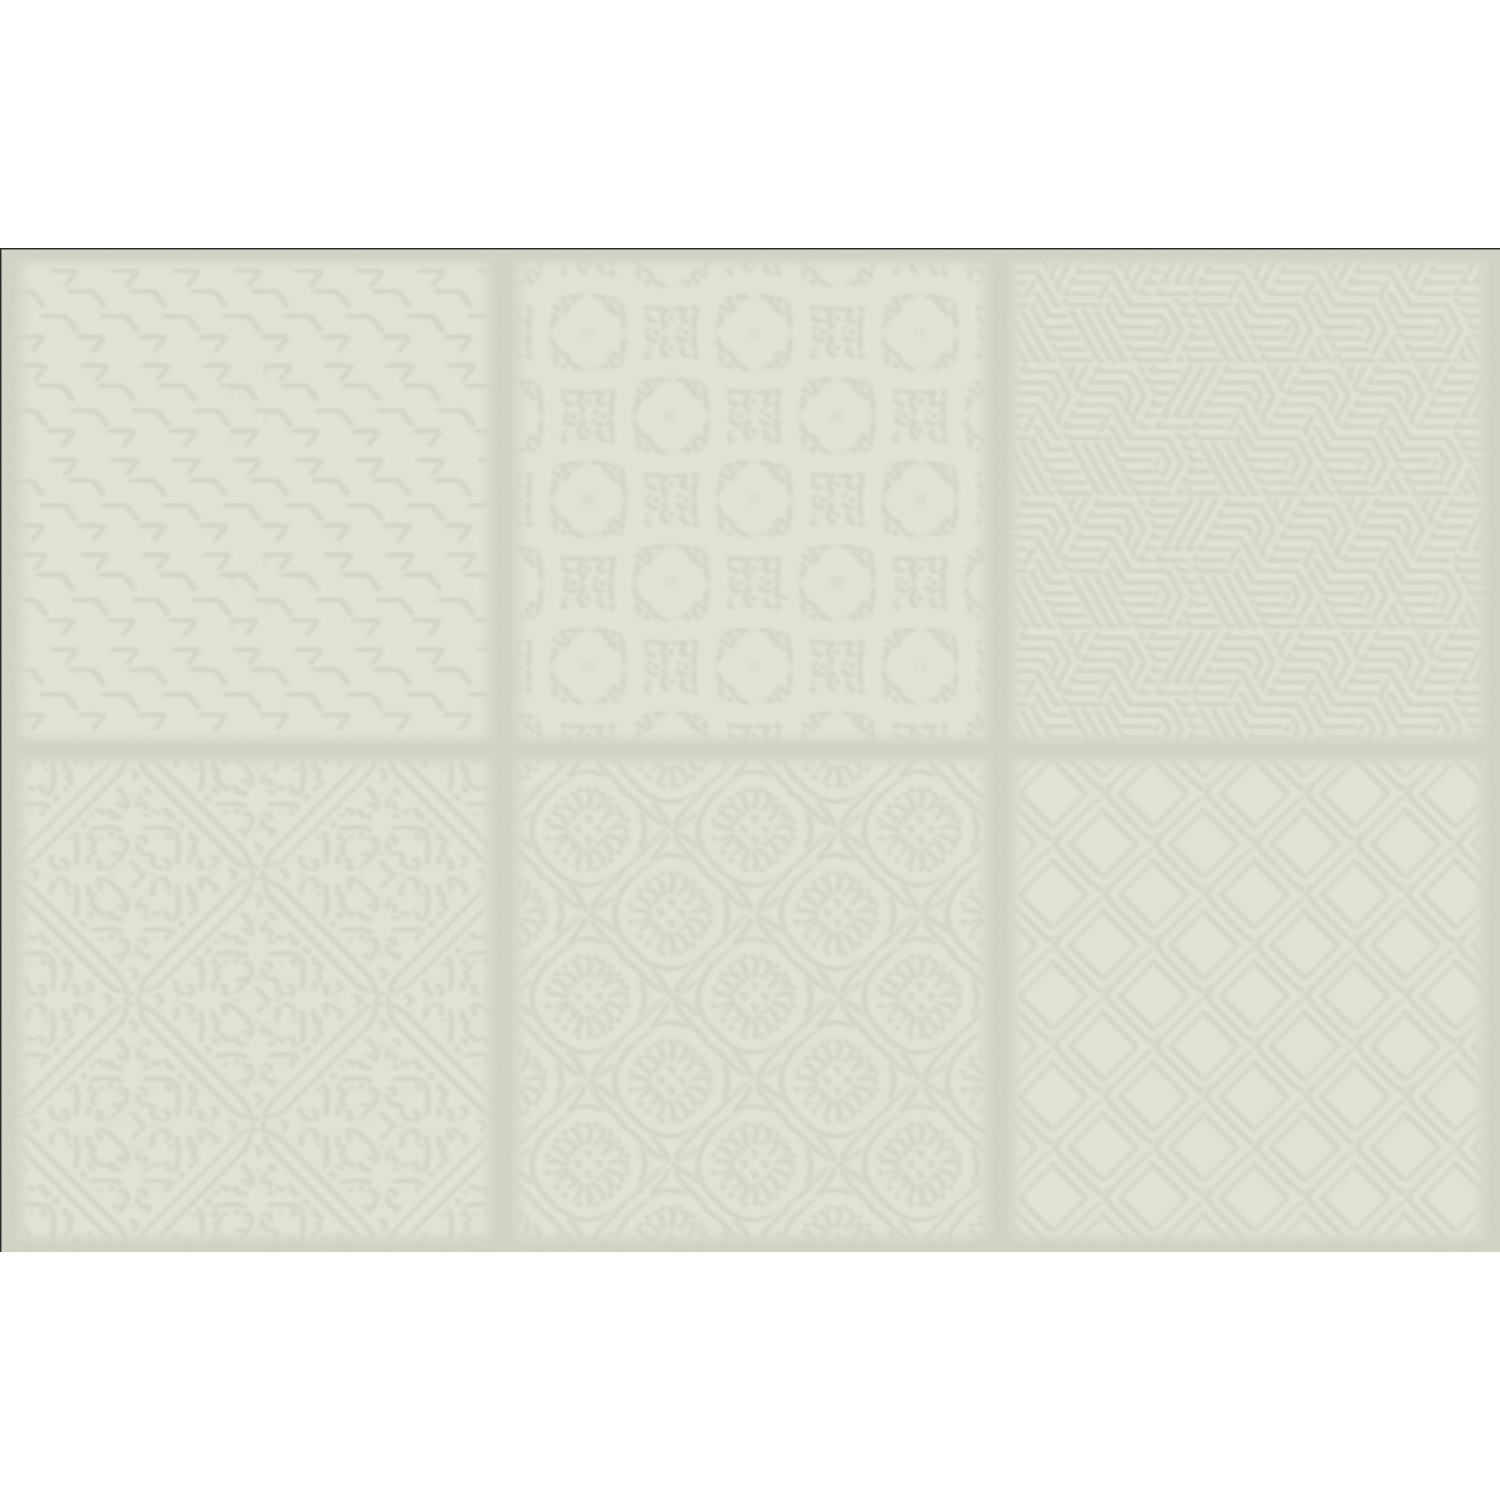 Marbella กระเบื้องเซรามิคปูผนัง 8x12 นิ้ว เจลลี่กรีน ZX2017 Gloss (25P)